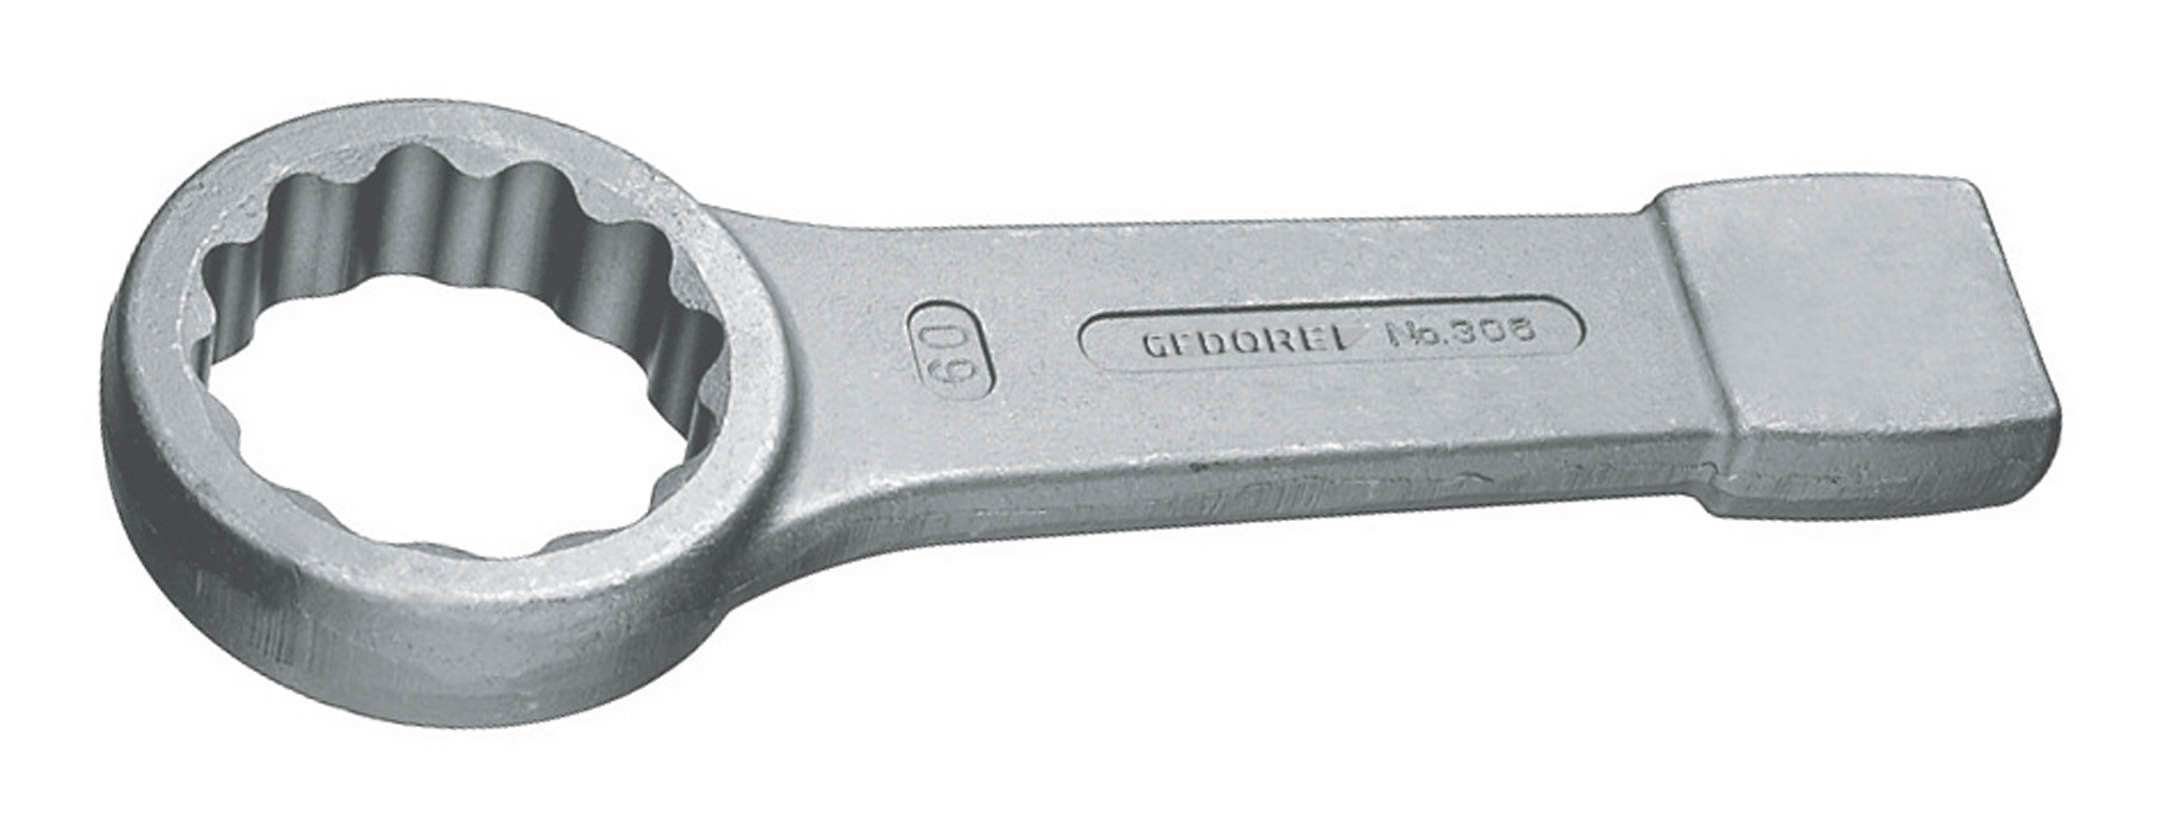 Gedore Ringschlüssel, Schlag DIN7444 100 mm